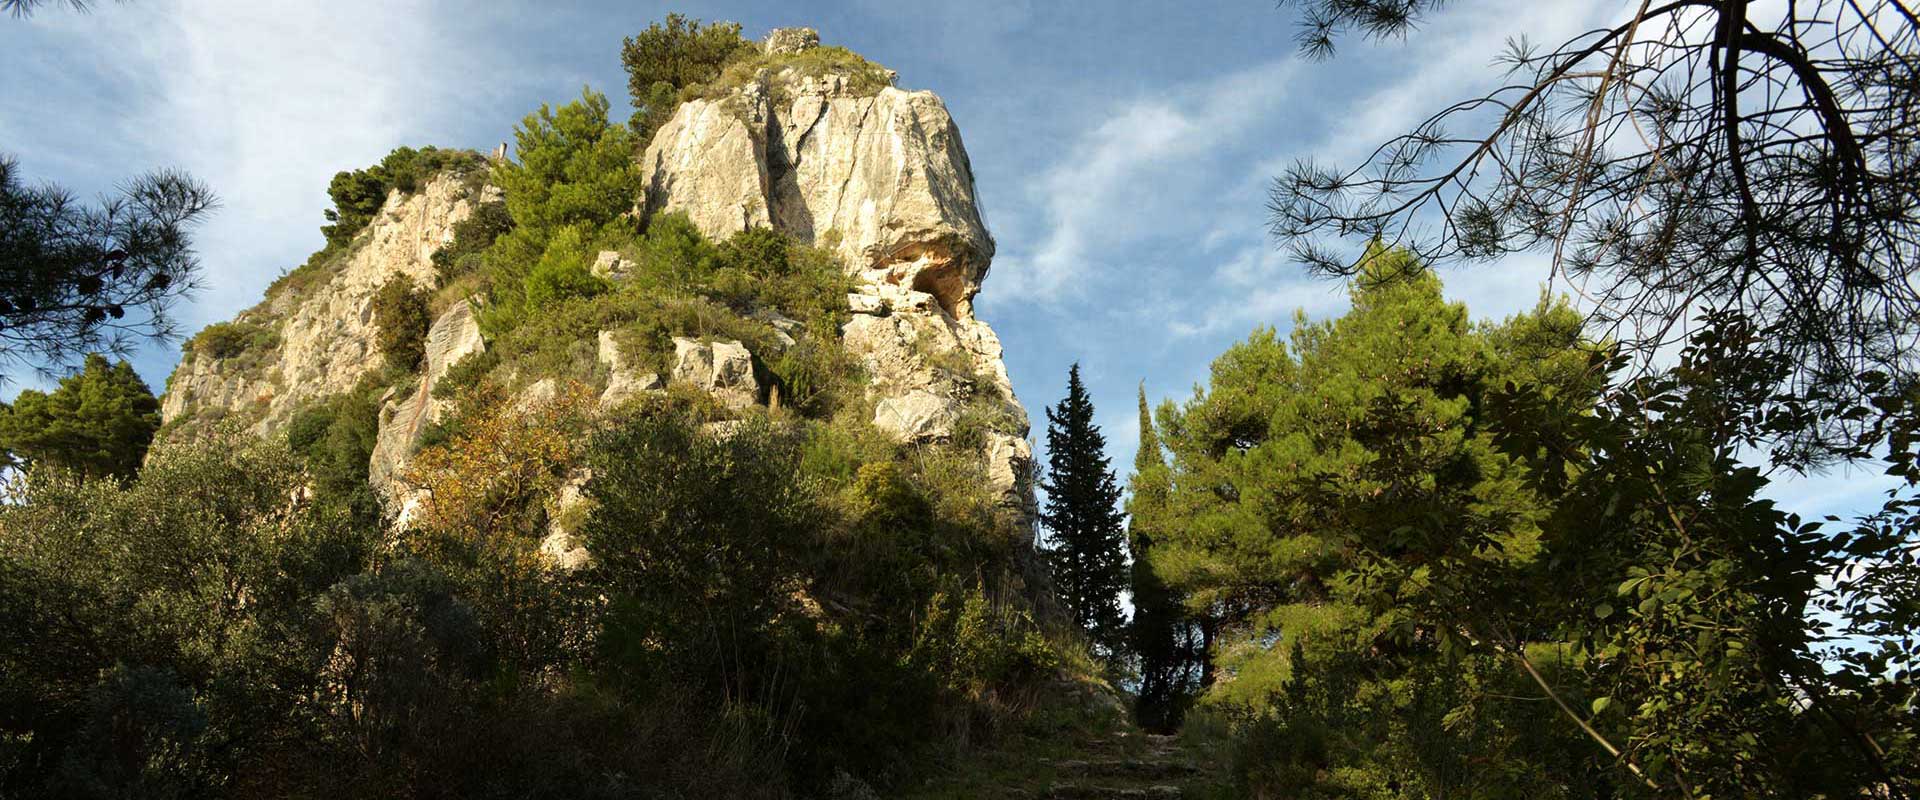 Landscape of Rocks and vegetazion near Torre dello Ziro